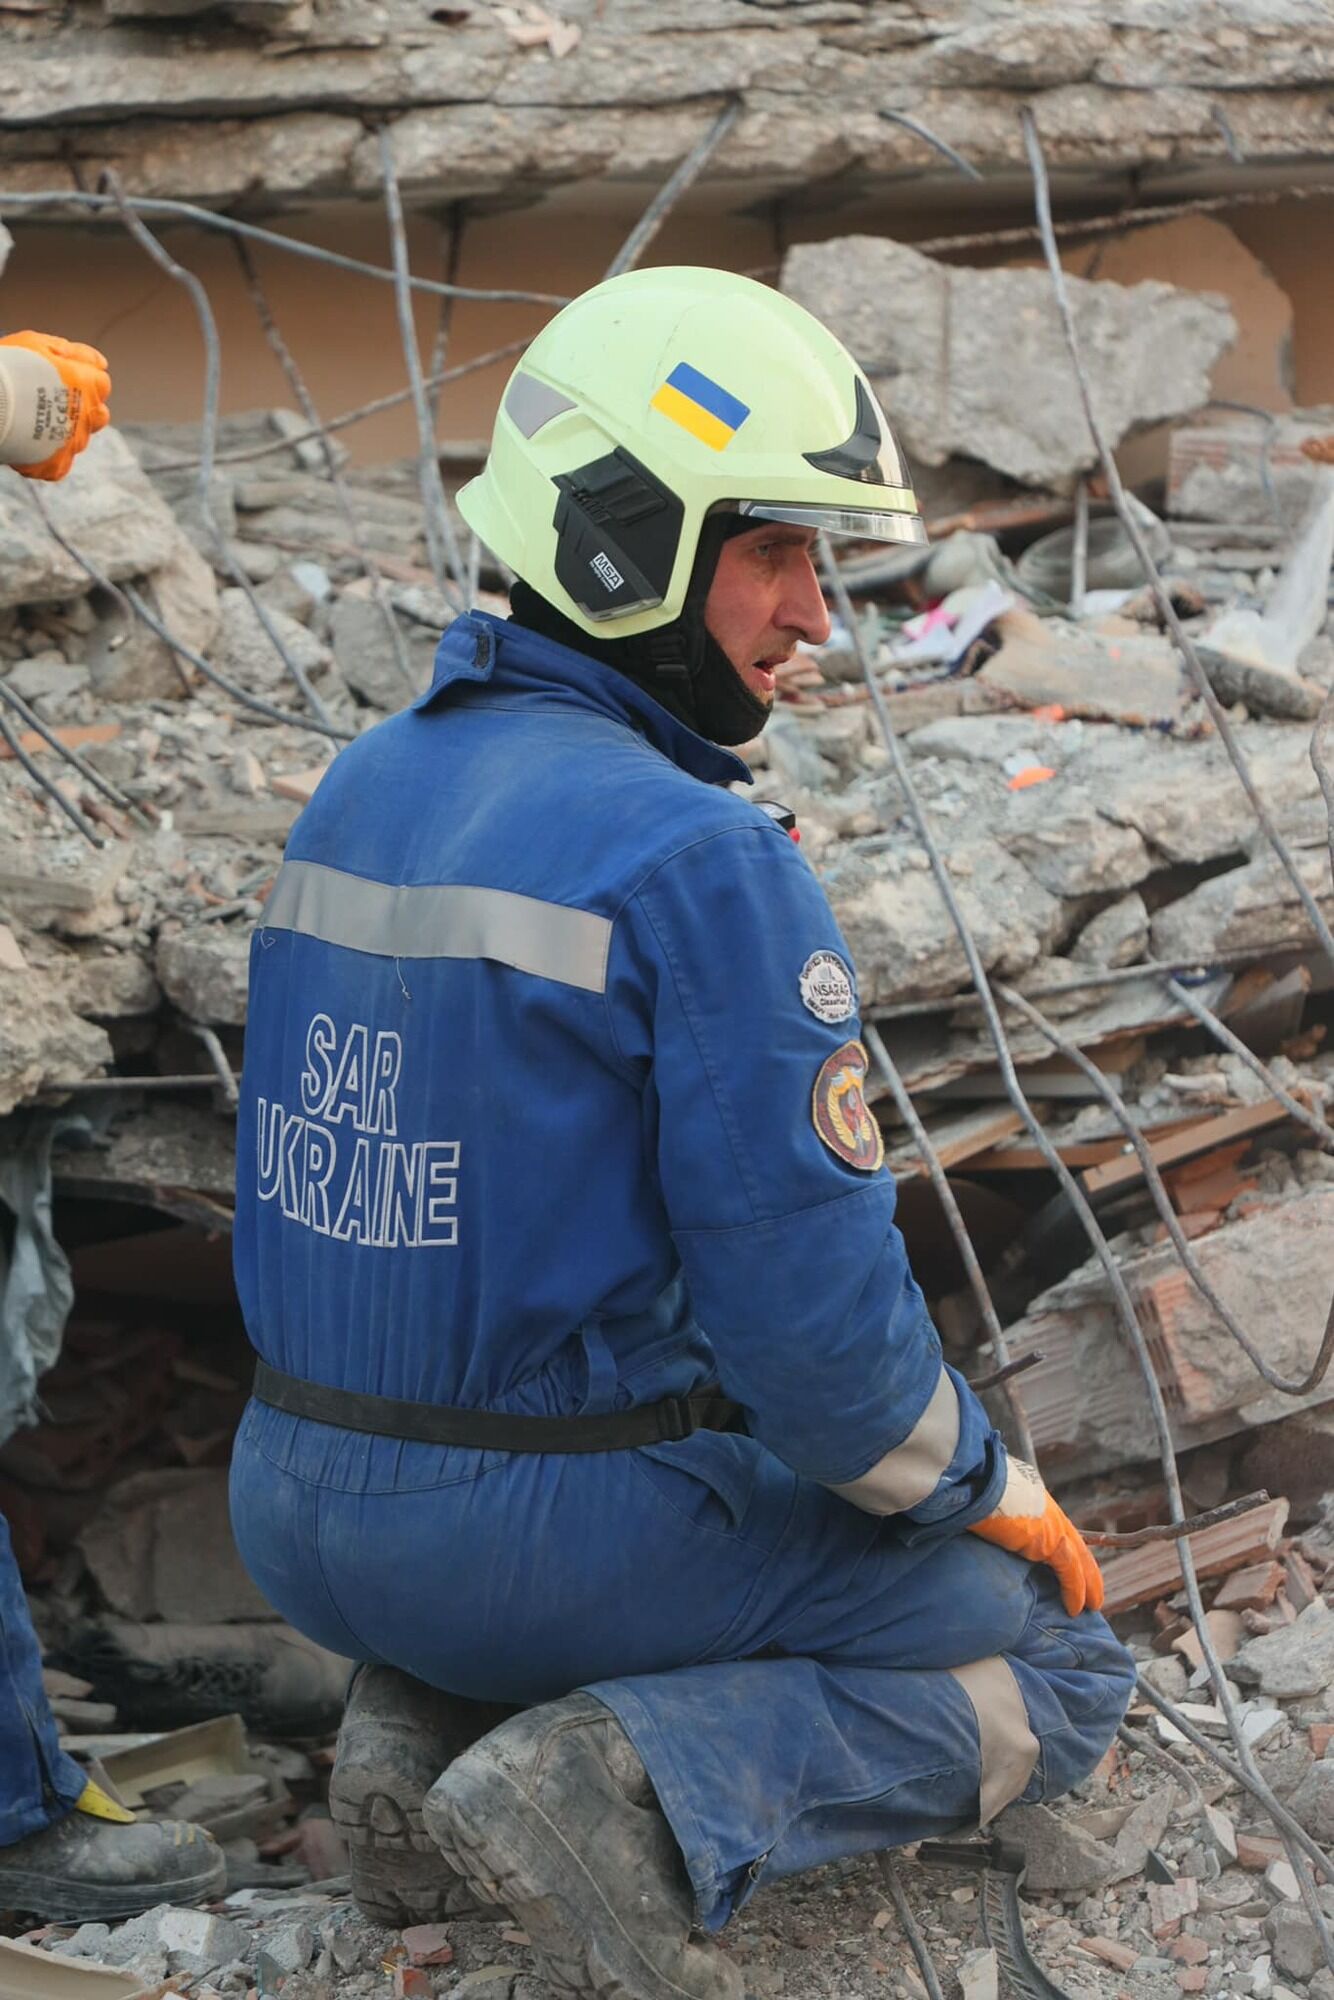 Украинские спасатели в Турции освободили из-под завалов женщину, ожидавшую помощи 9 дней после землетрясения. Фото и видео